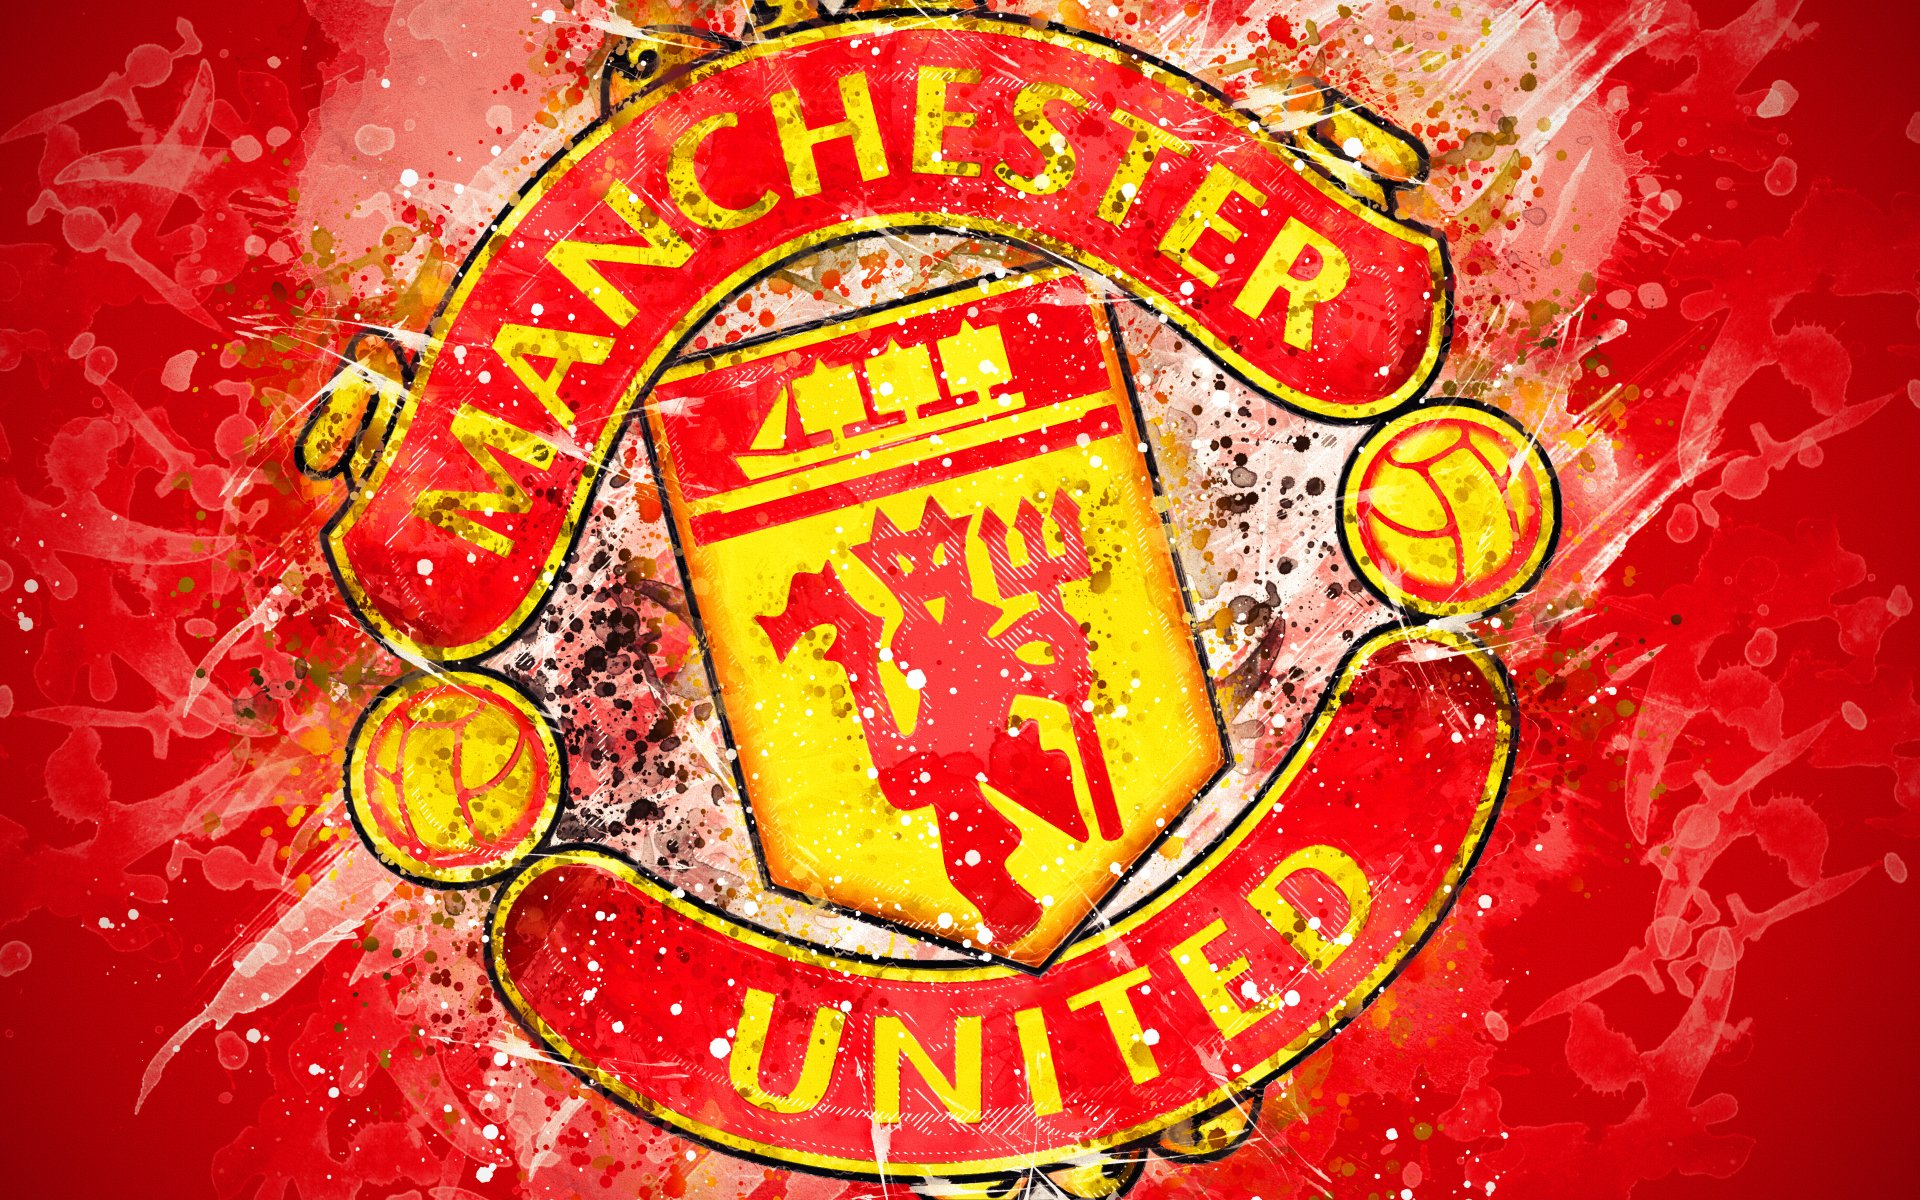 Manutd. Футбольный клуб Манчестер Юнайтед. ФК Манчестер Юнайтед лого. Манчестер футбольный клуб логотип. Эмблема Манчестер Юнайтед футбольный клуб фото.